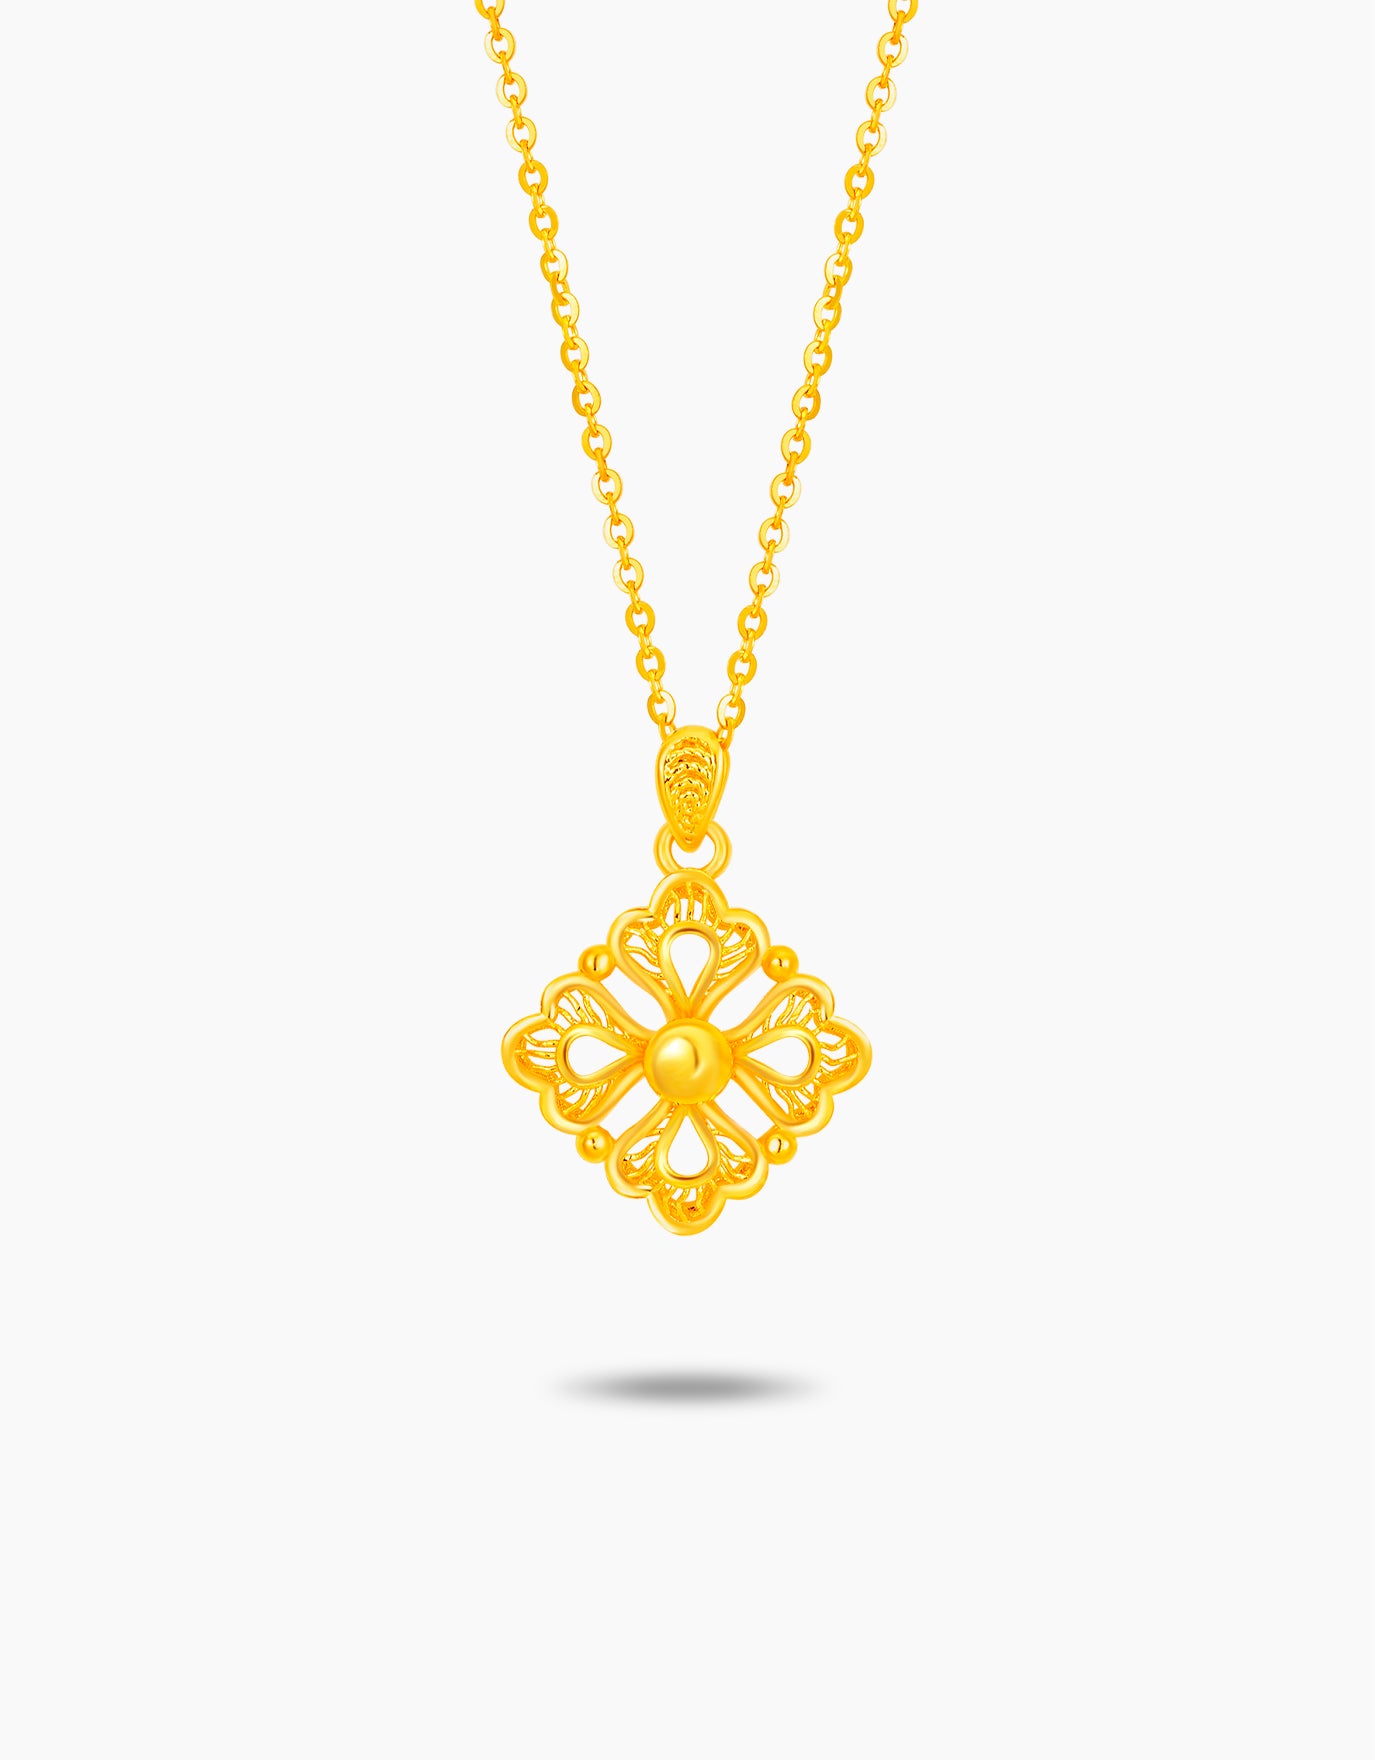 LVC 9IN Aurum Folium 999 Gold Necklace